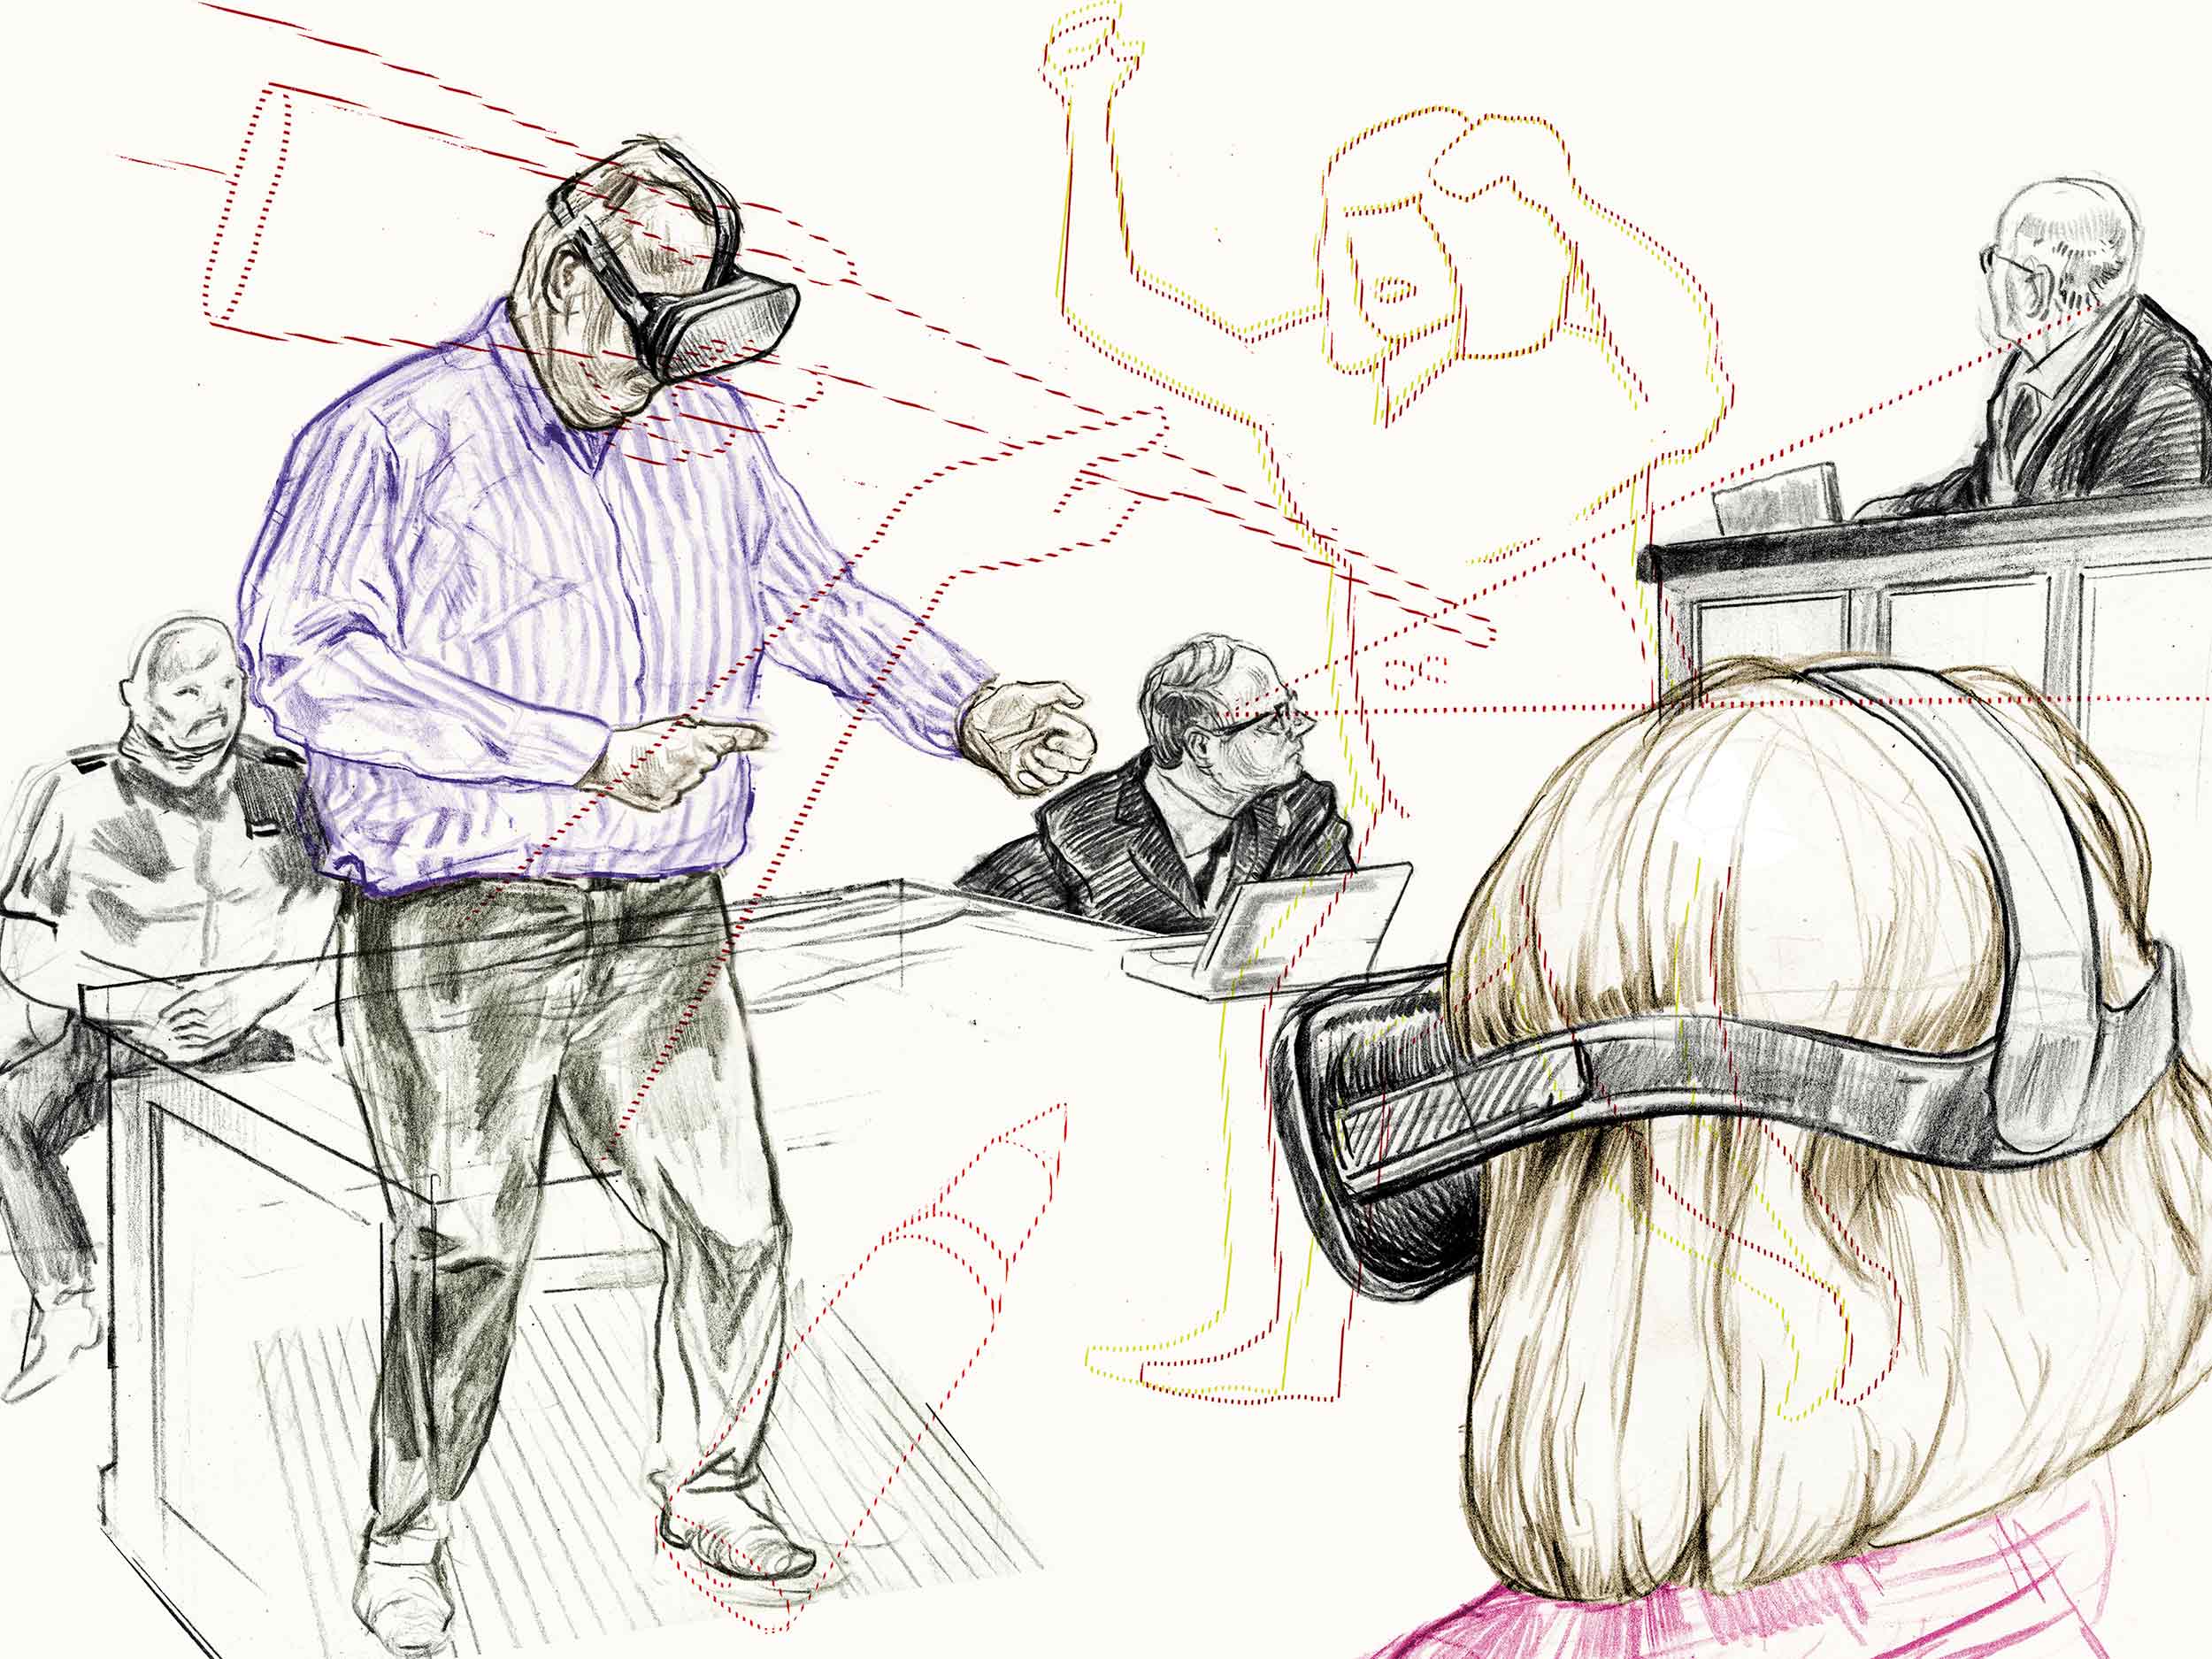 Zeichnung "VR-Einsatz im Gericht"